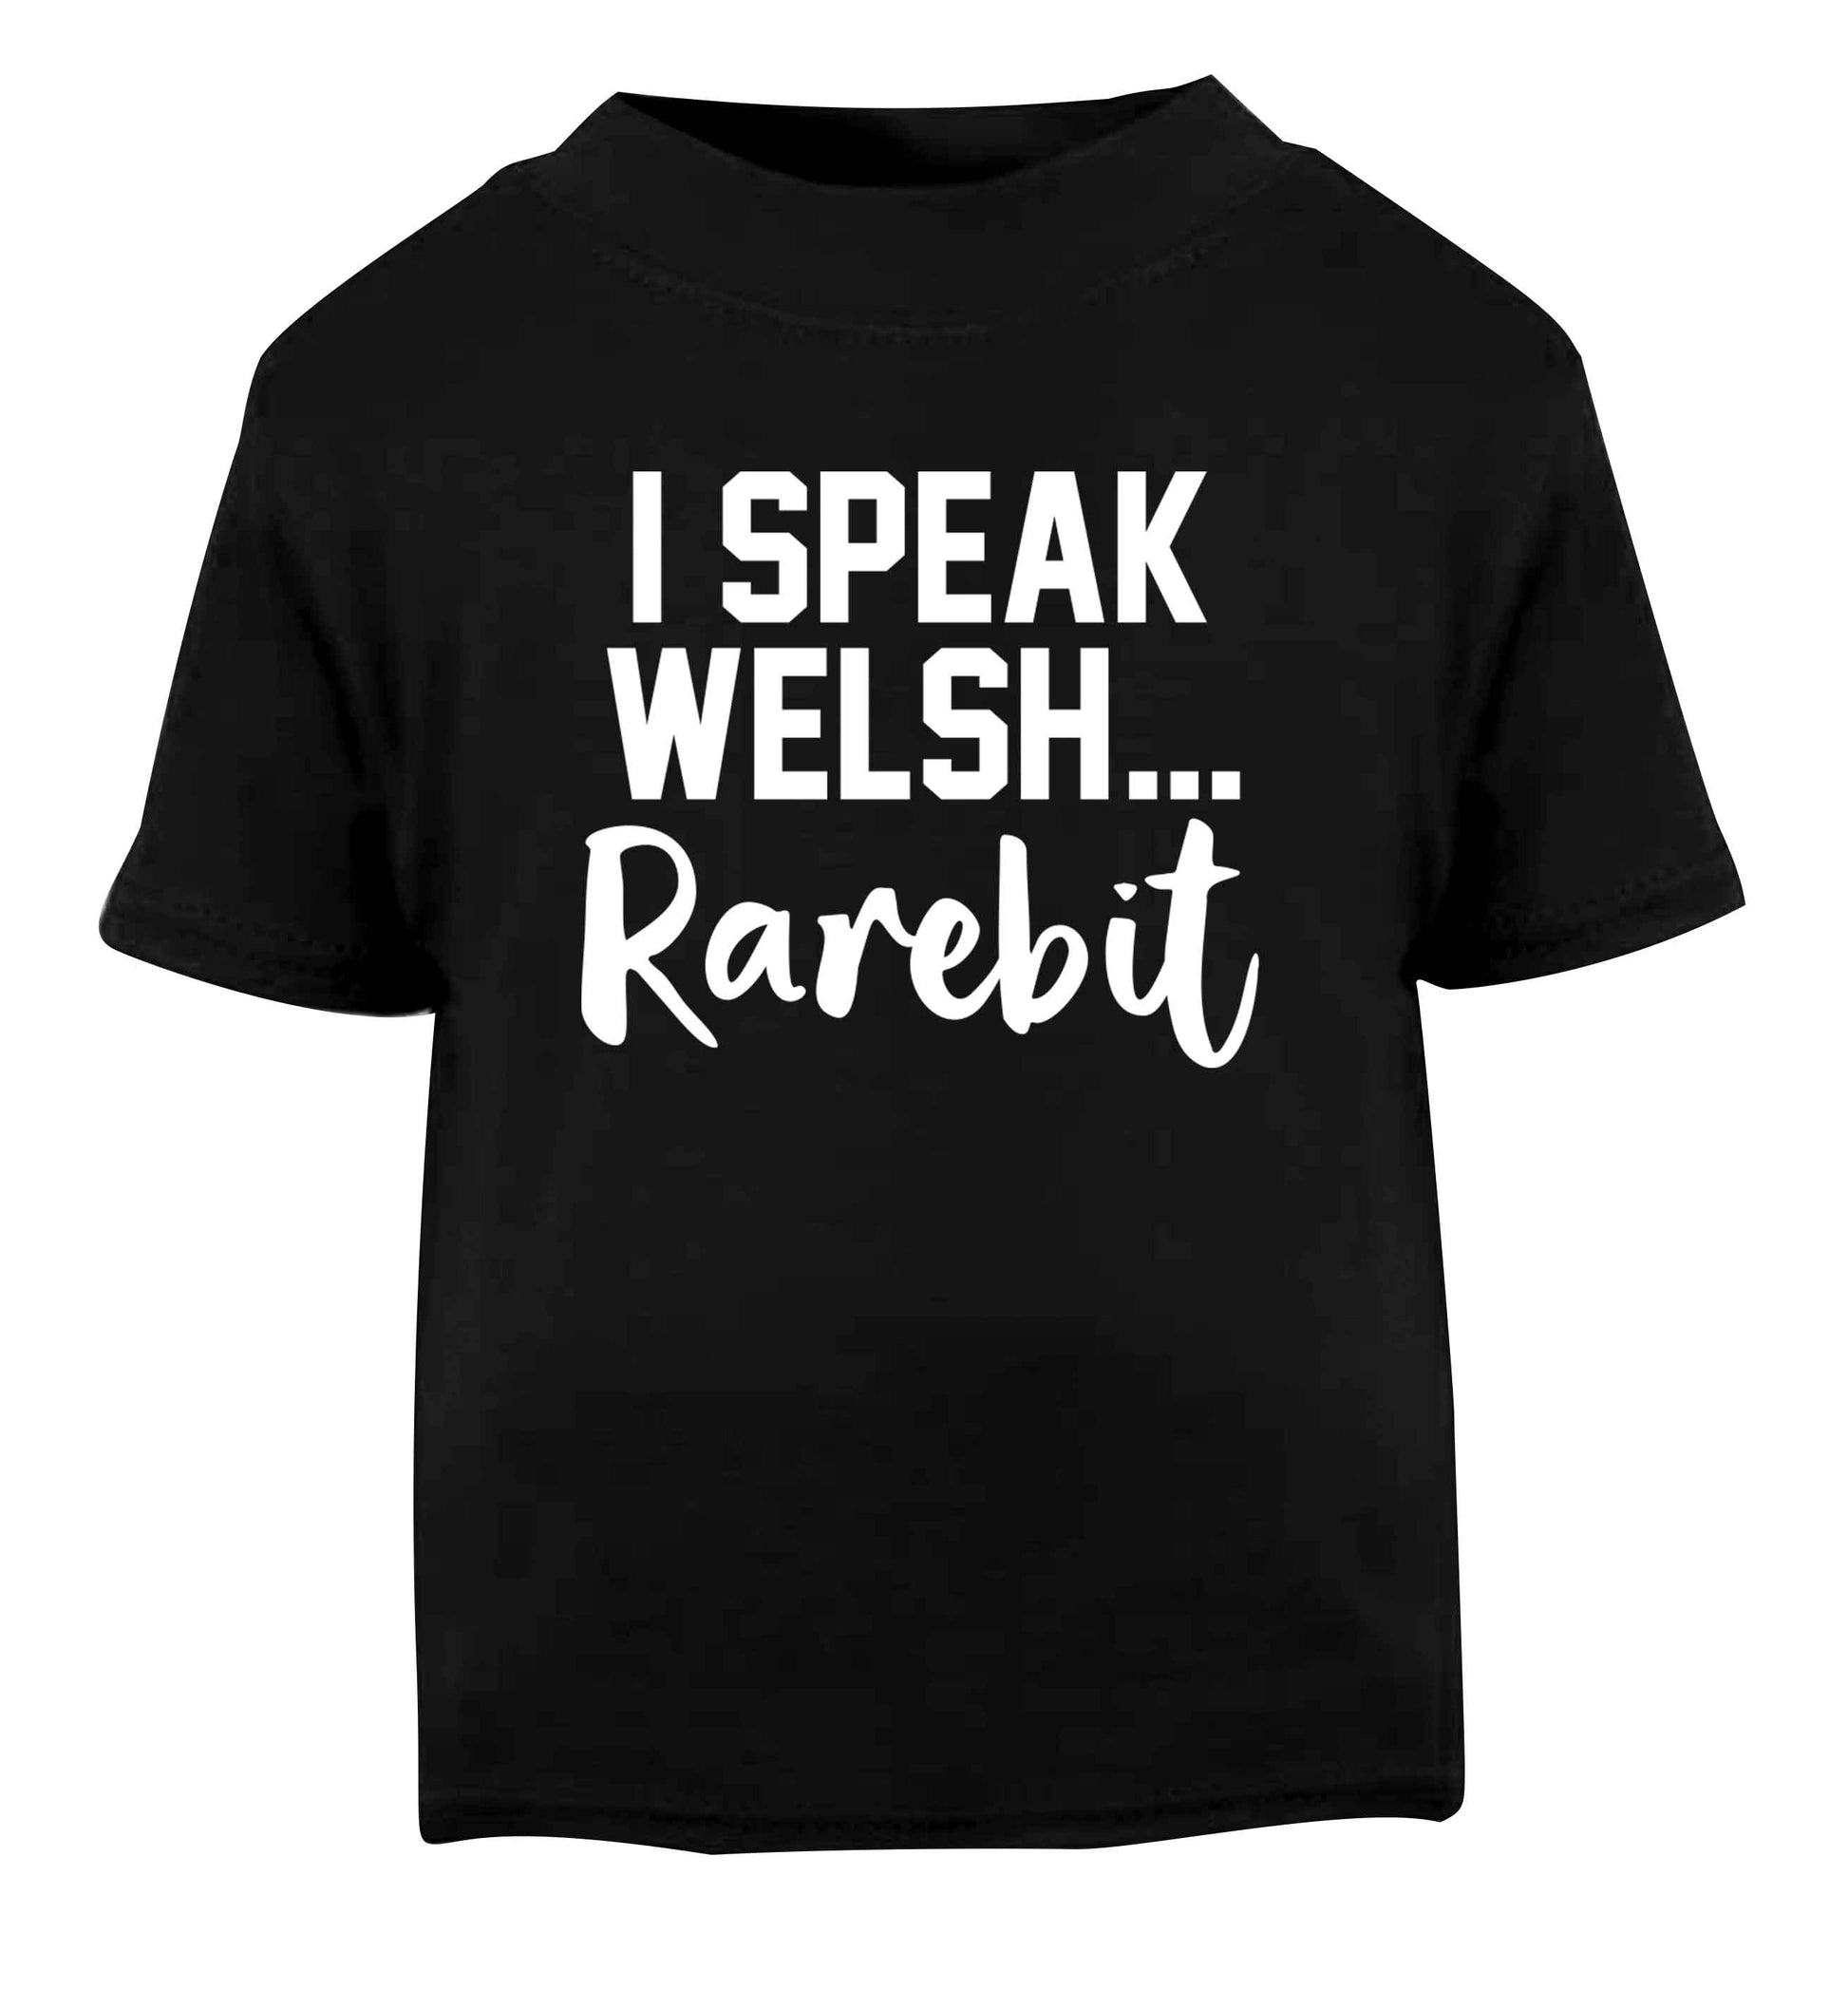 I speak Welsh...rarebit Black Baby Toddler Tshirt 2 years